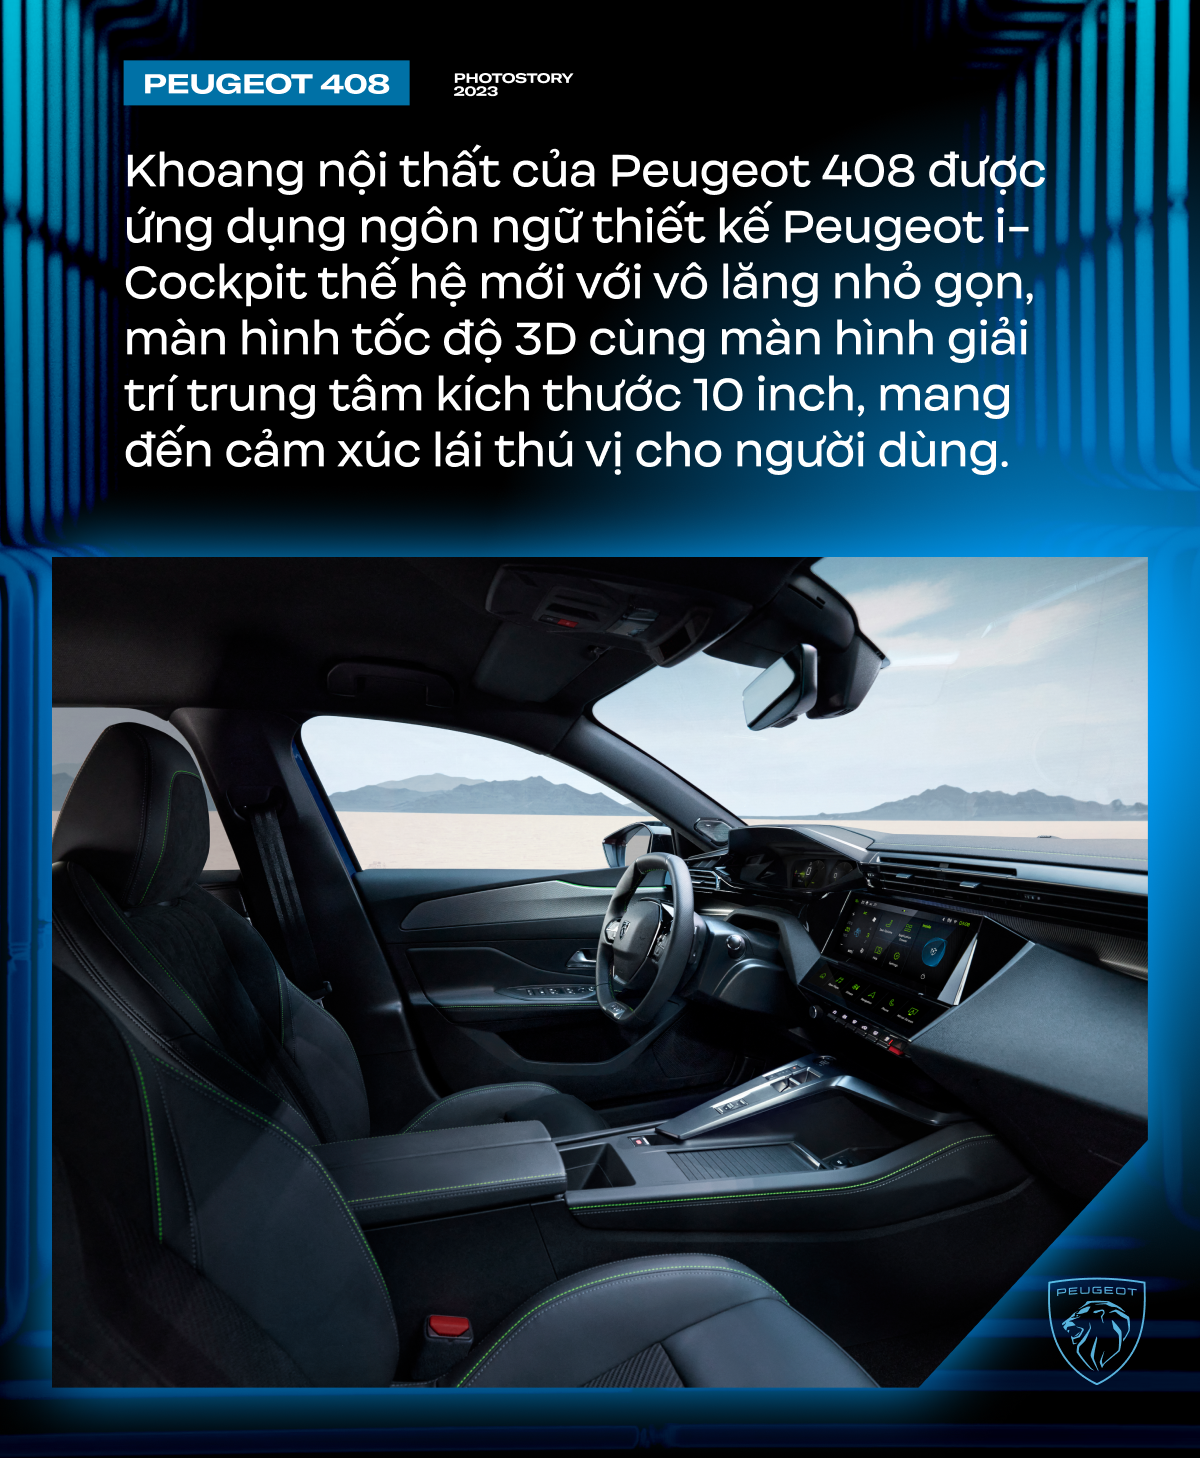 Peugeot 408 - Lựa chọn khác biệt cho người Việt ở phân khúc SUV hạng C - Ảnh 5.